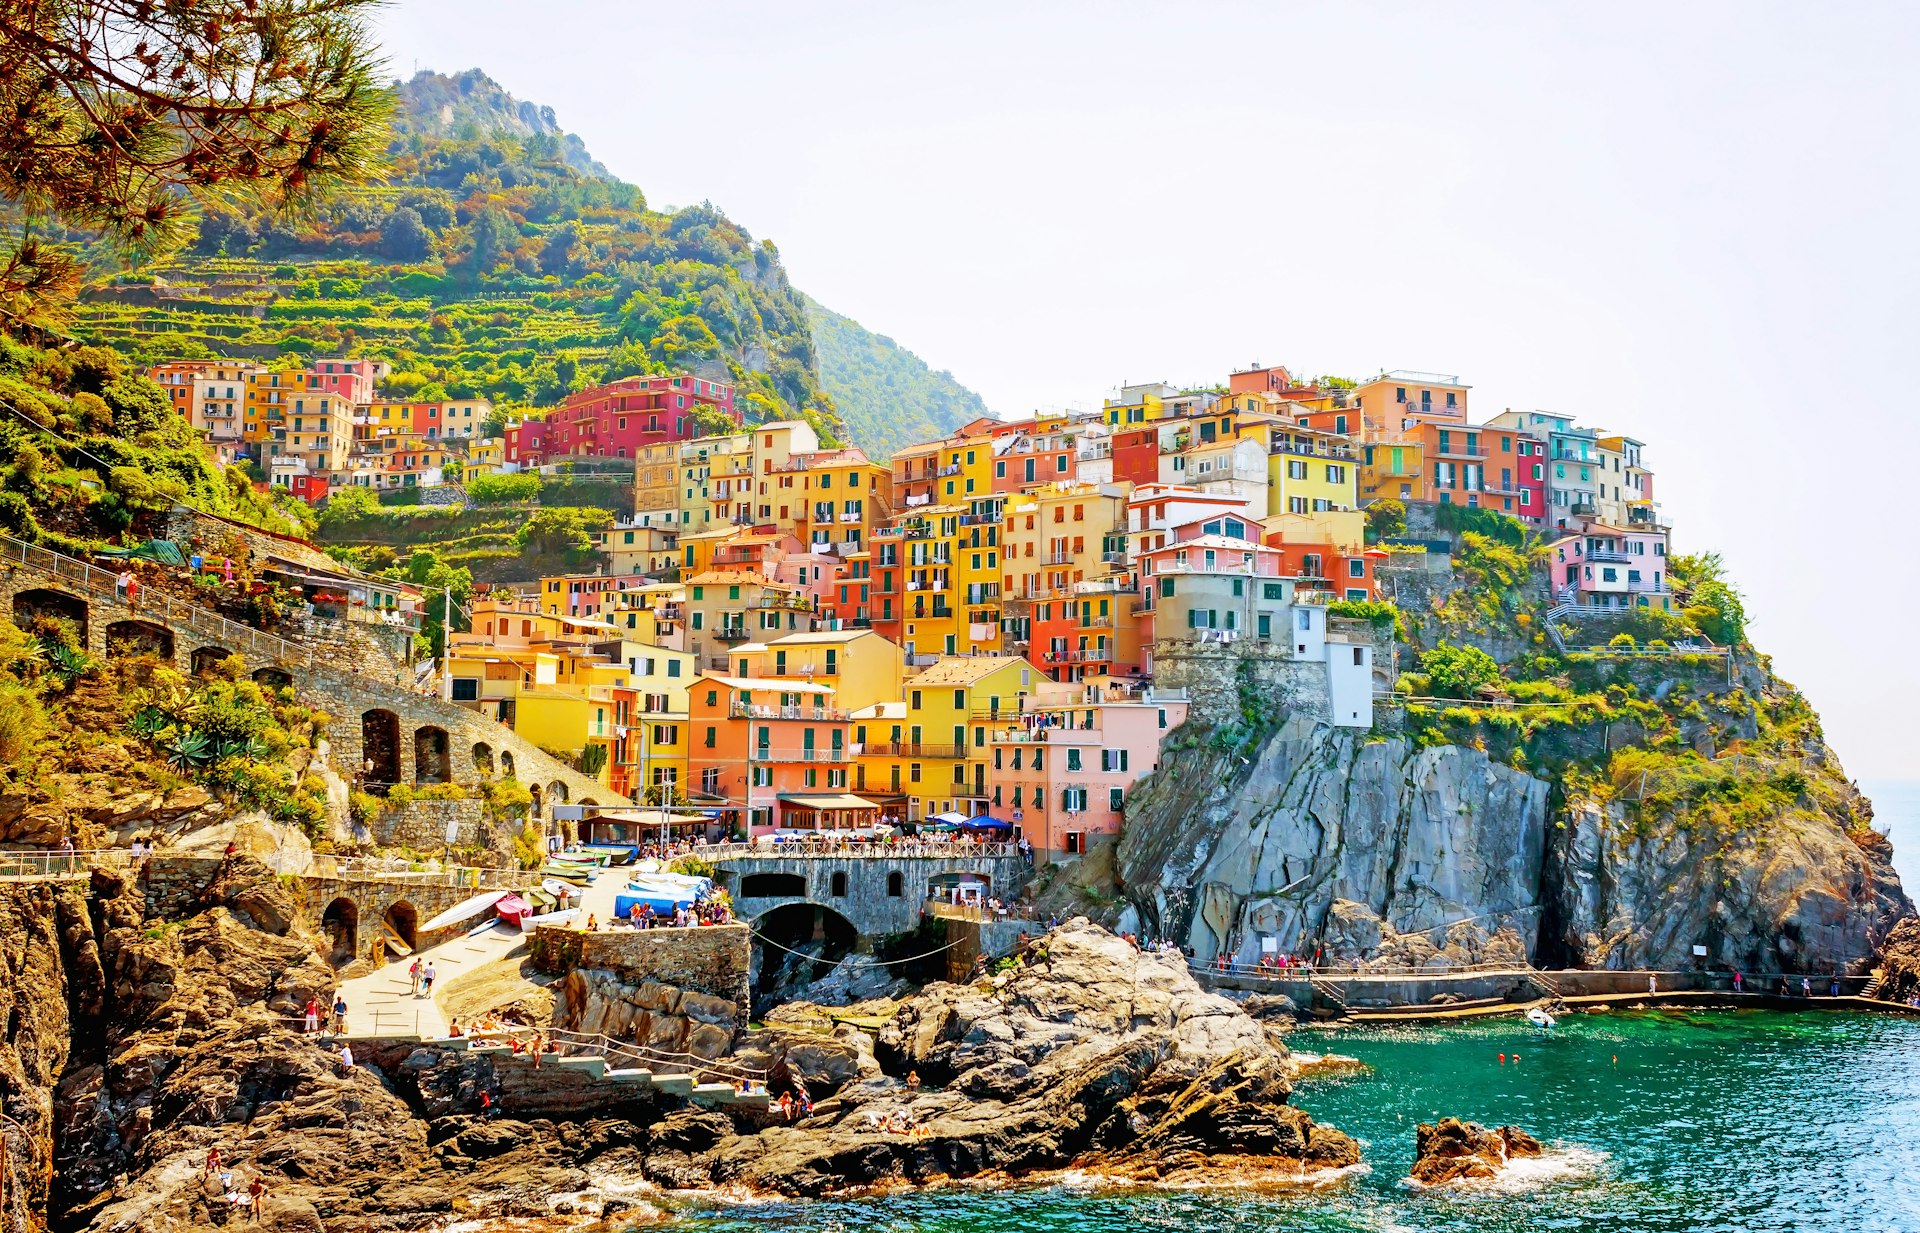 Colorful seaside buildings in Manarola village, Cinque Terre, Italy